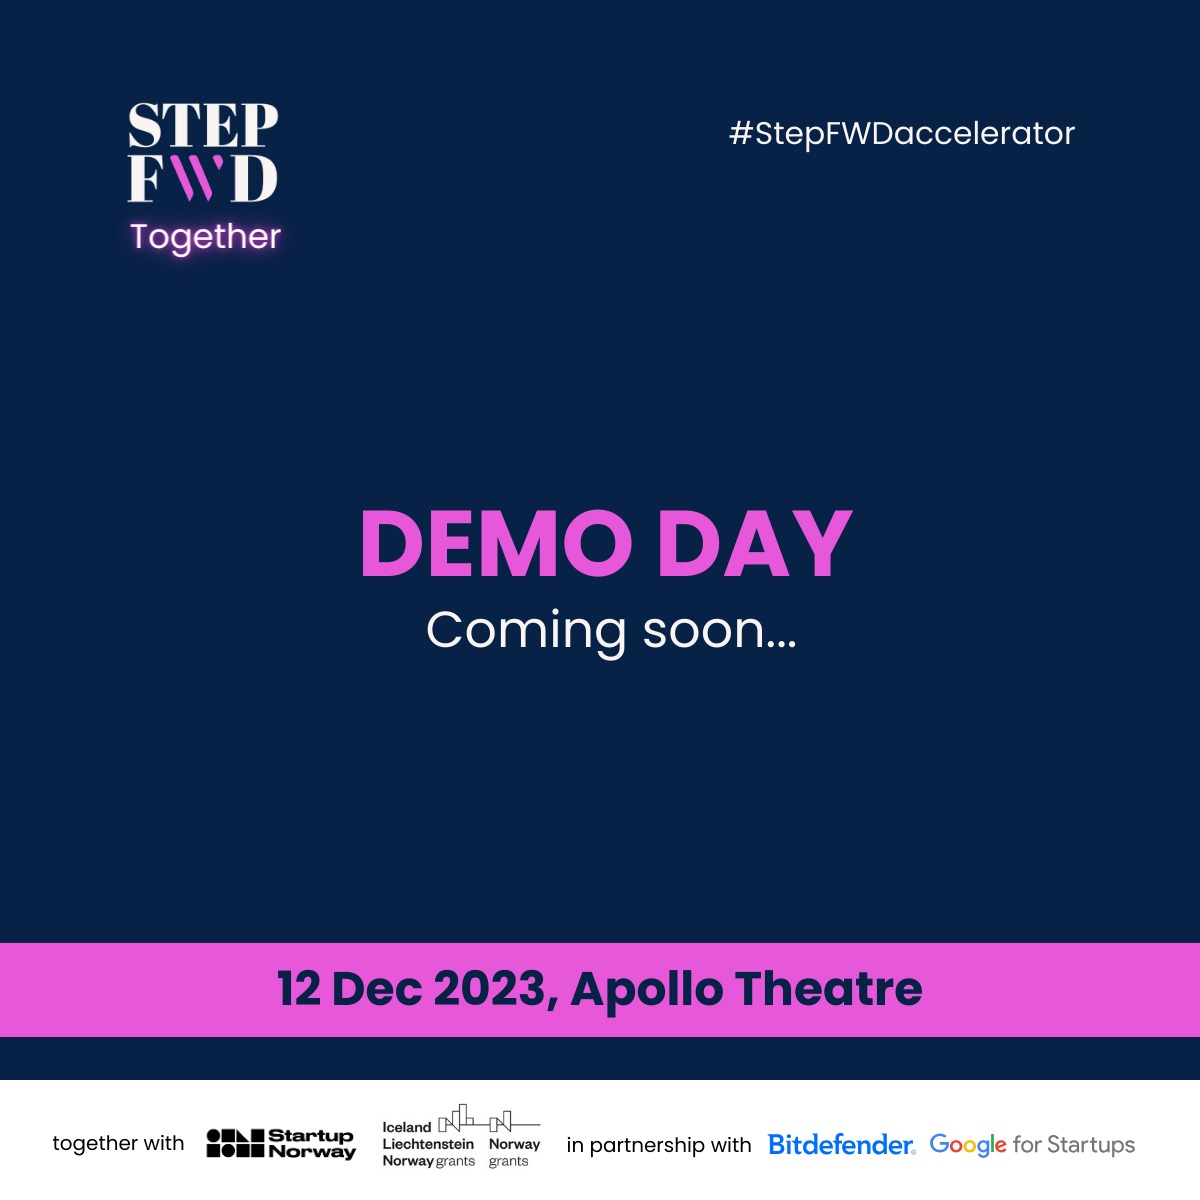 StepFWD 2023 – echipele ce ajung la Demo Day